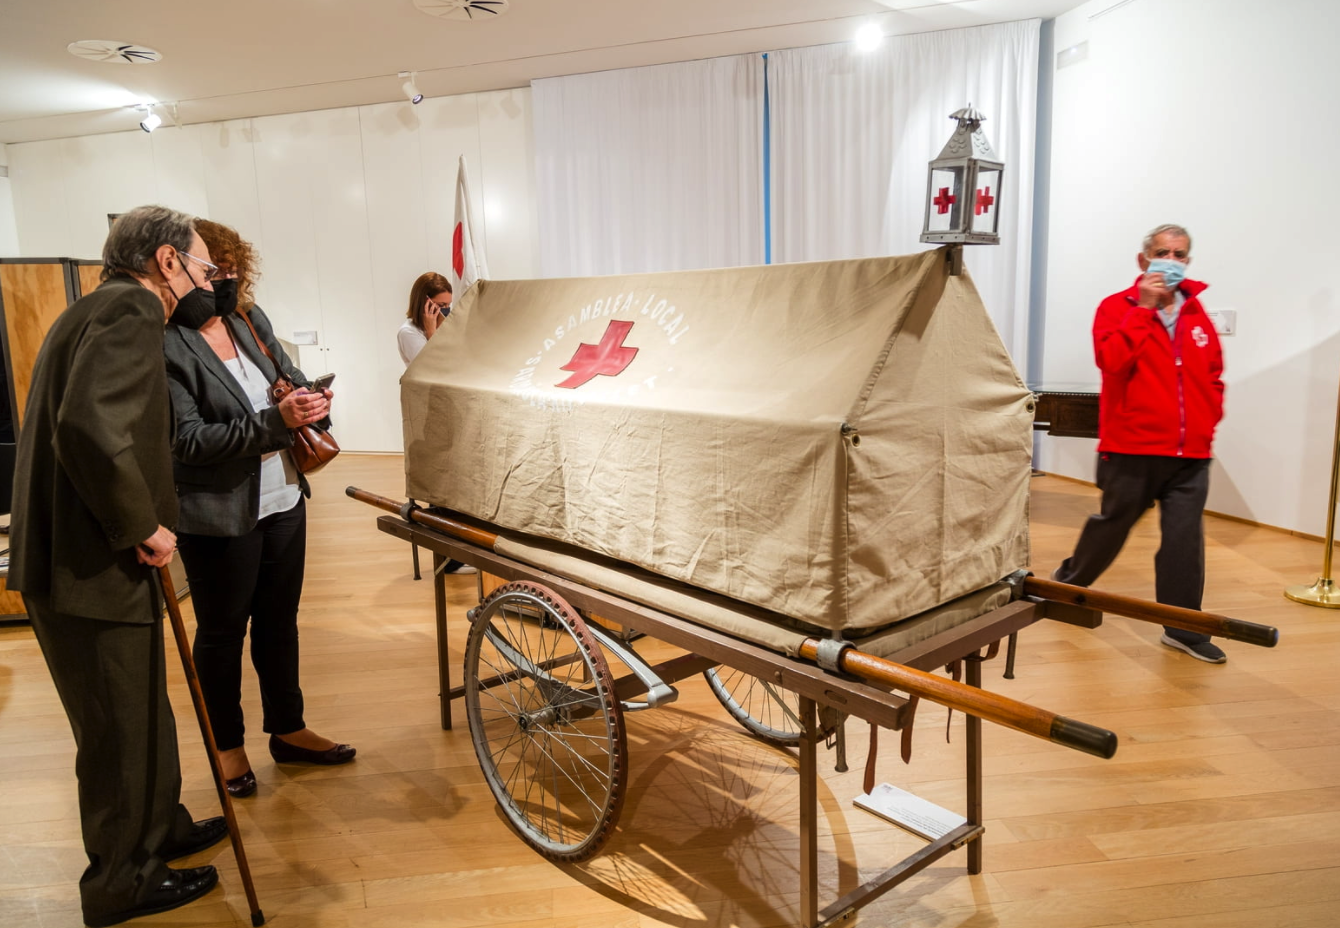 La Creu Roja Cerdanyola-Ripollet-Montcada celebra 100 anys amb un exposició i un acte popular. FOTO: Núria Puentes (Ajuntament de Cerdanyola)